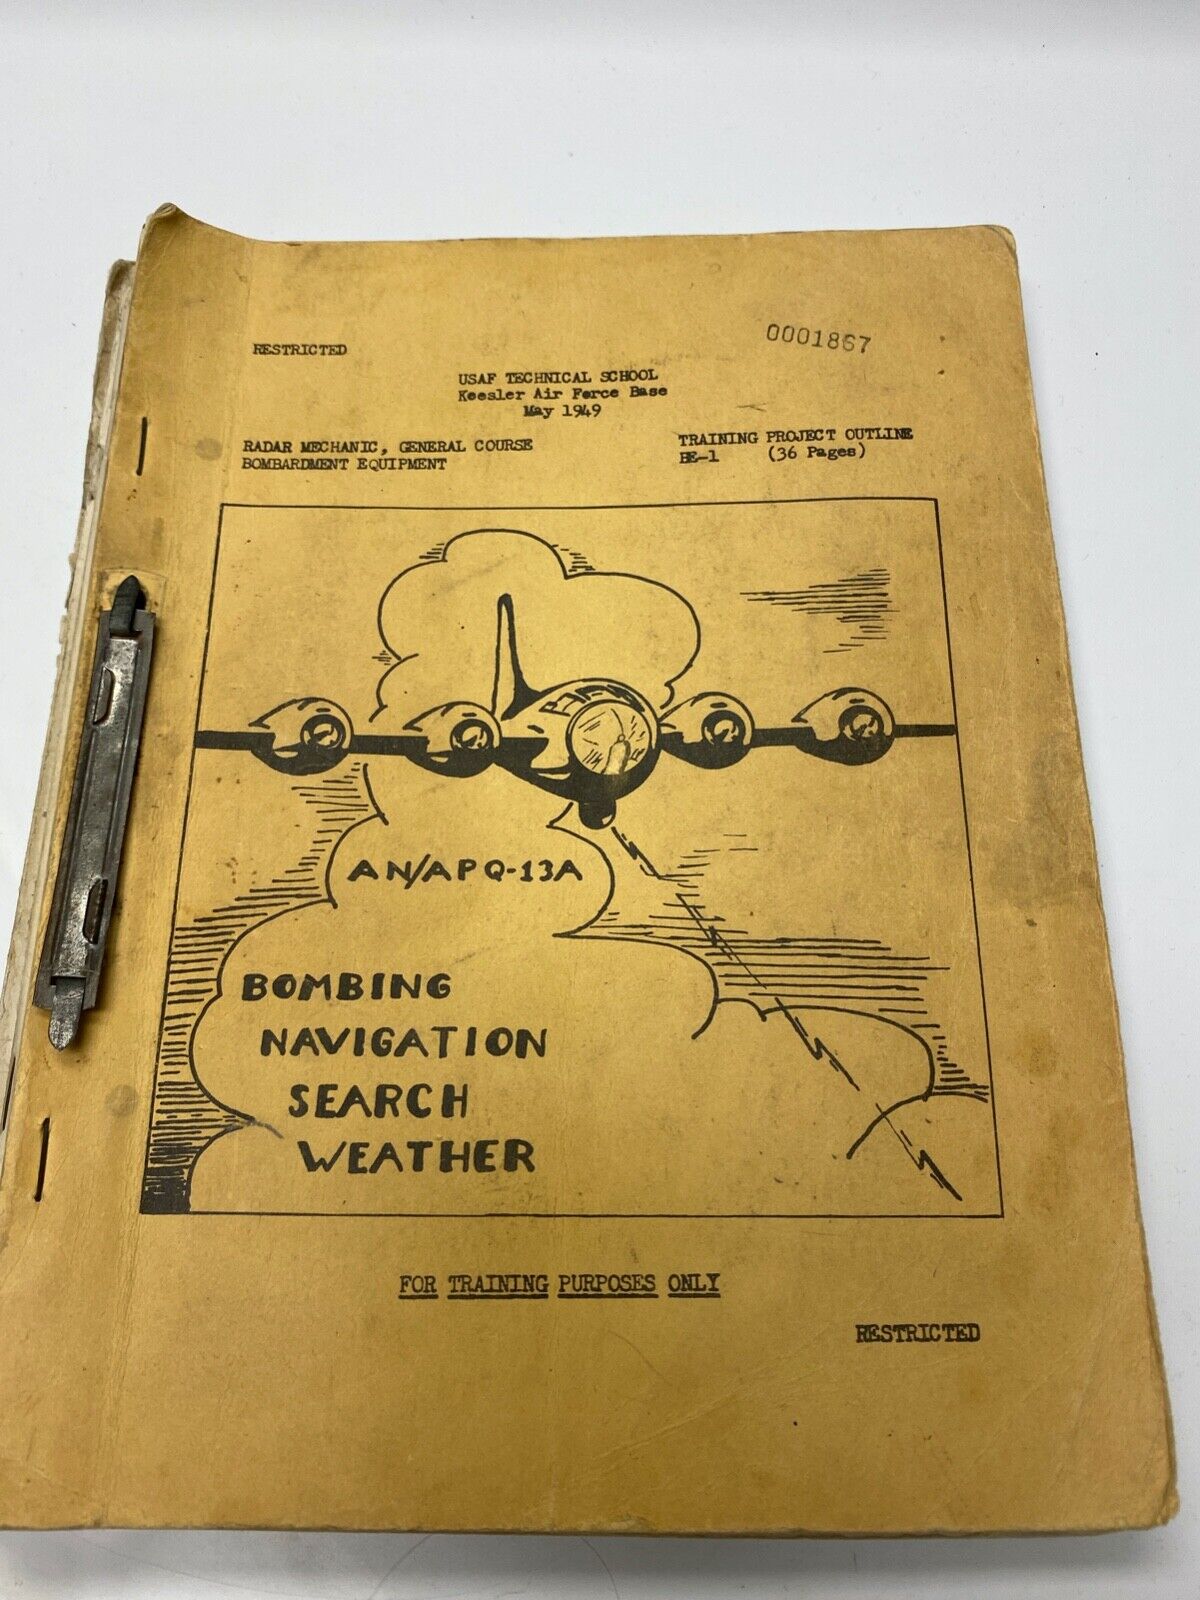 Lot of 1949 USAF Training Booklets - Keesler Air Force Base